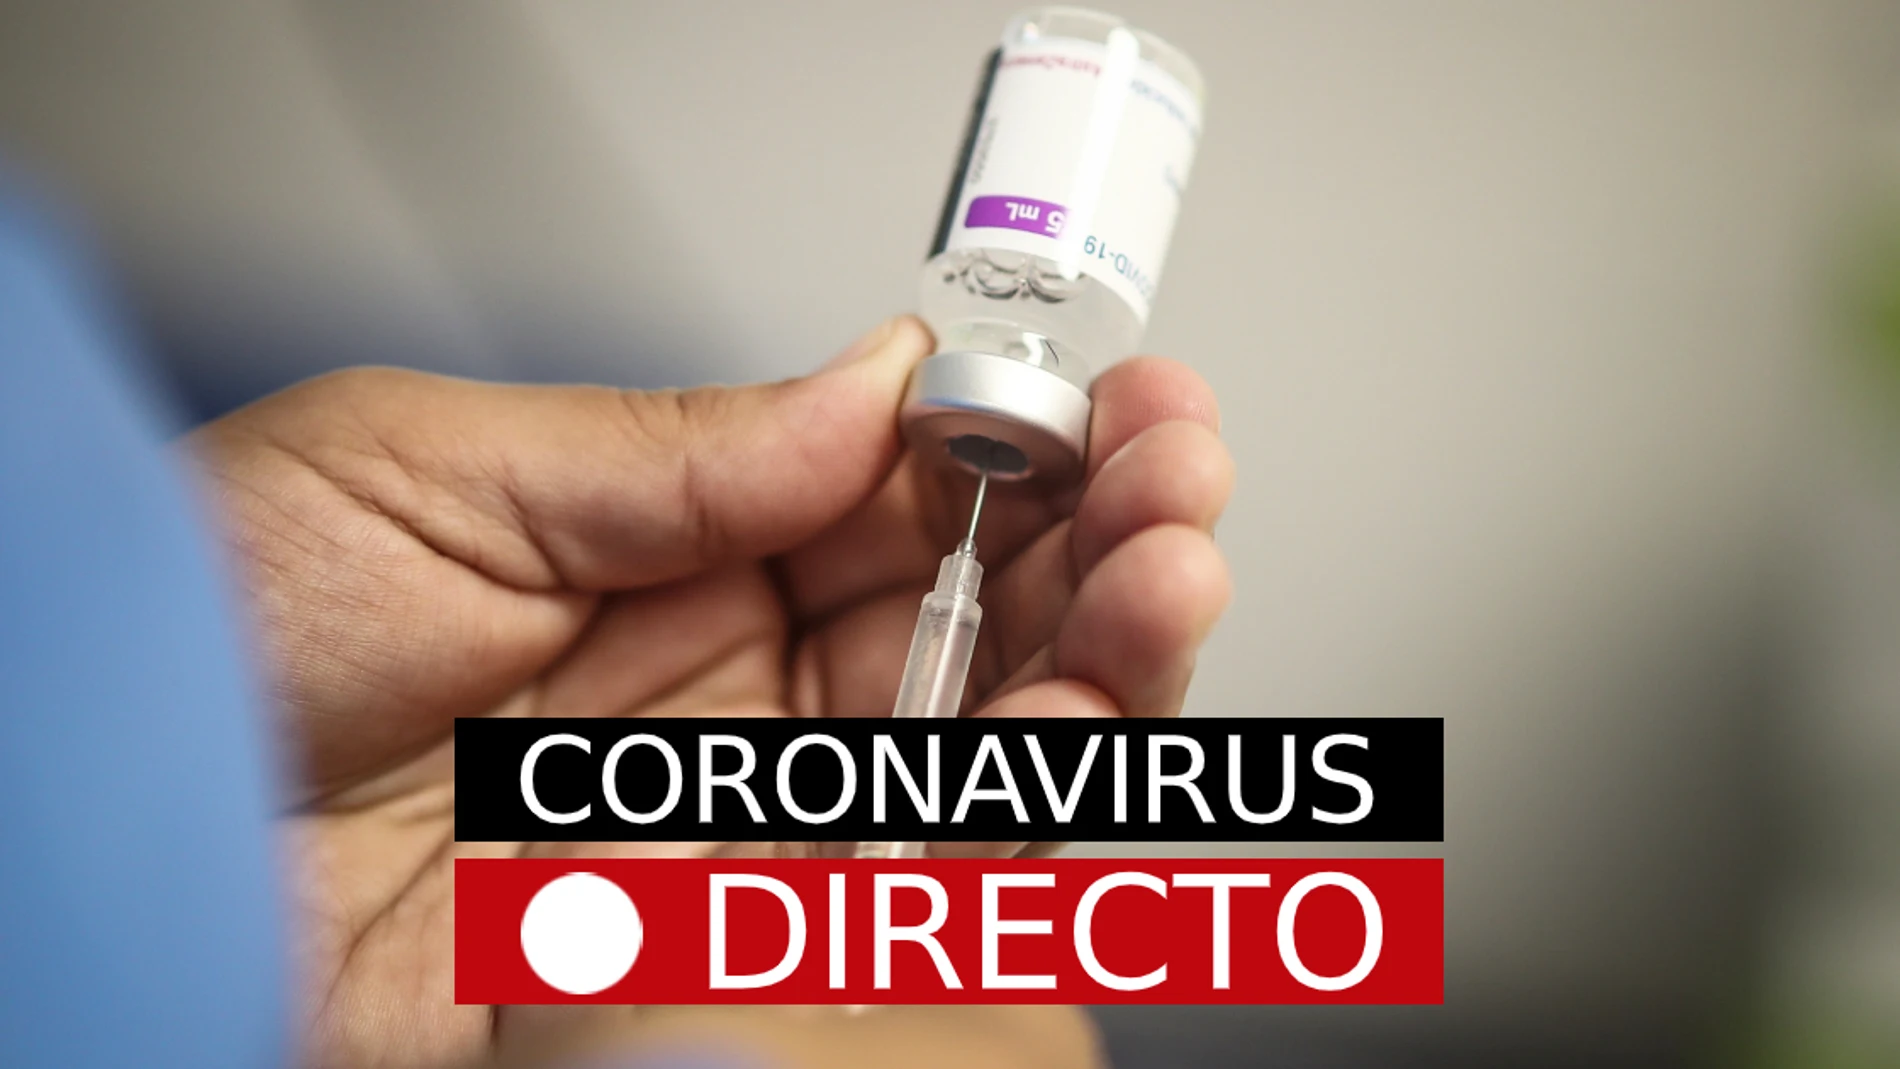 Última hora del coronavirus en España: Nuevas restricciones, certificado COVID y vacuna, hoy